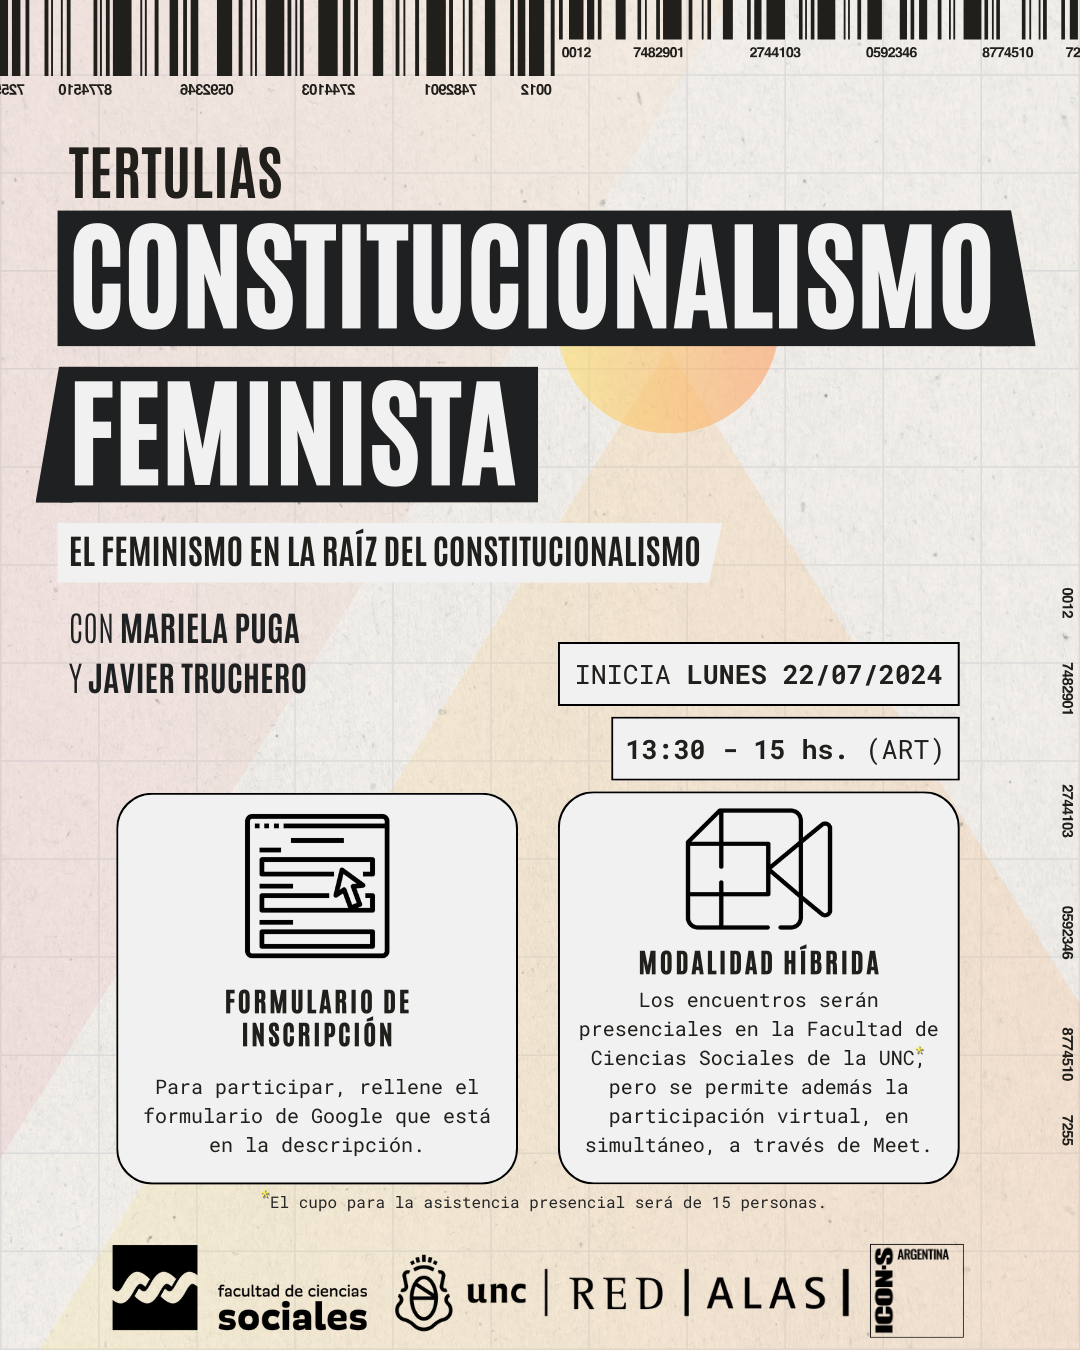 tertulias-constitucionalismo-feminista